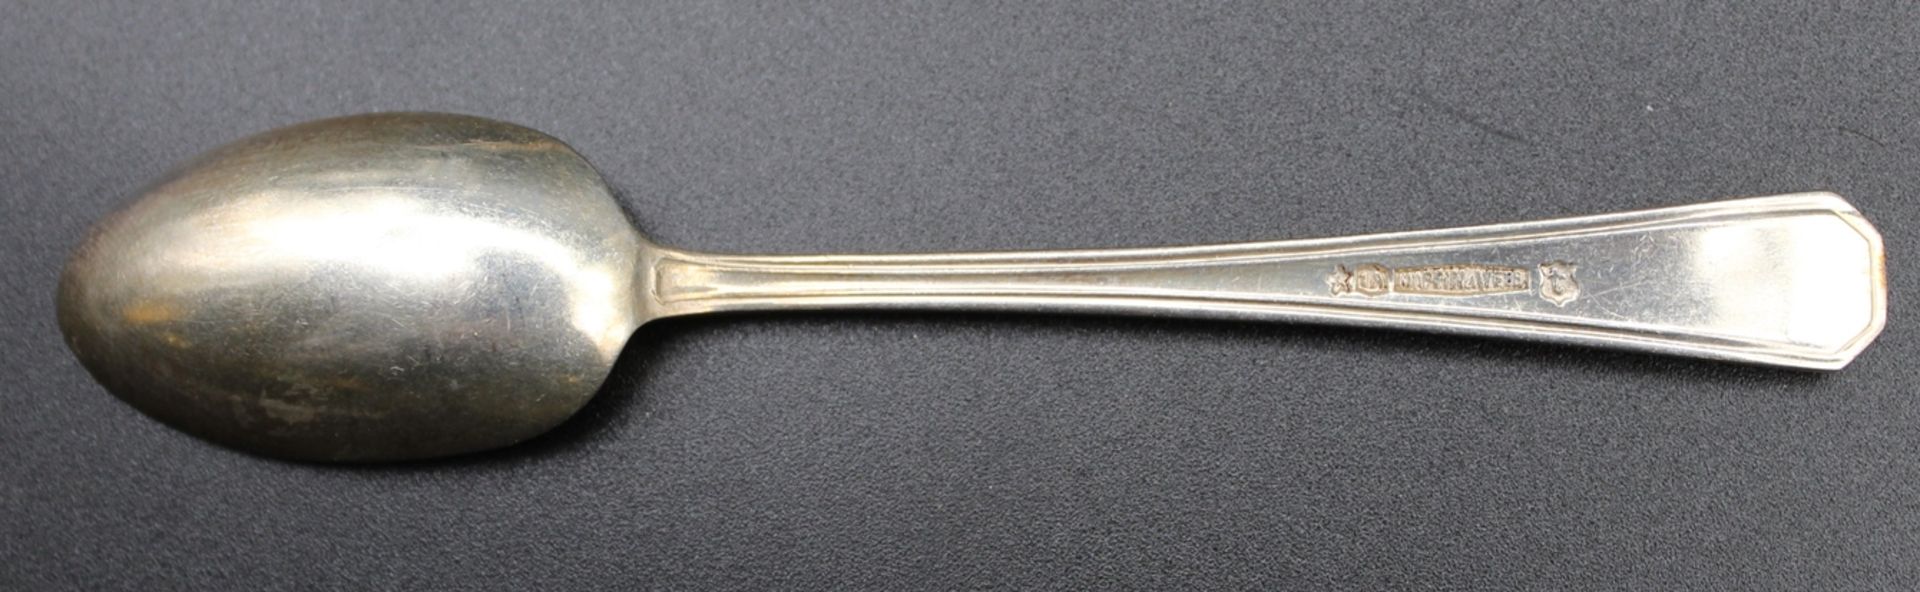 5x Teelöffel, Mappin & Webb, versilbert, Stile mit Ankersymbol, L-11cm. - Bild 2 aus 3